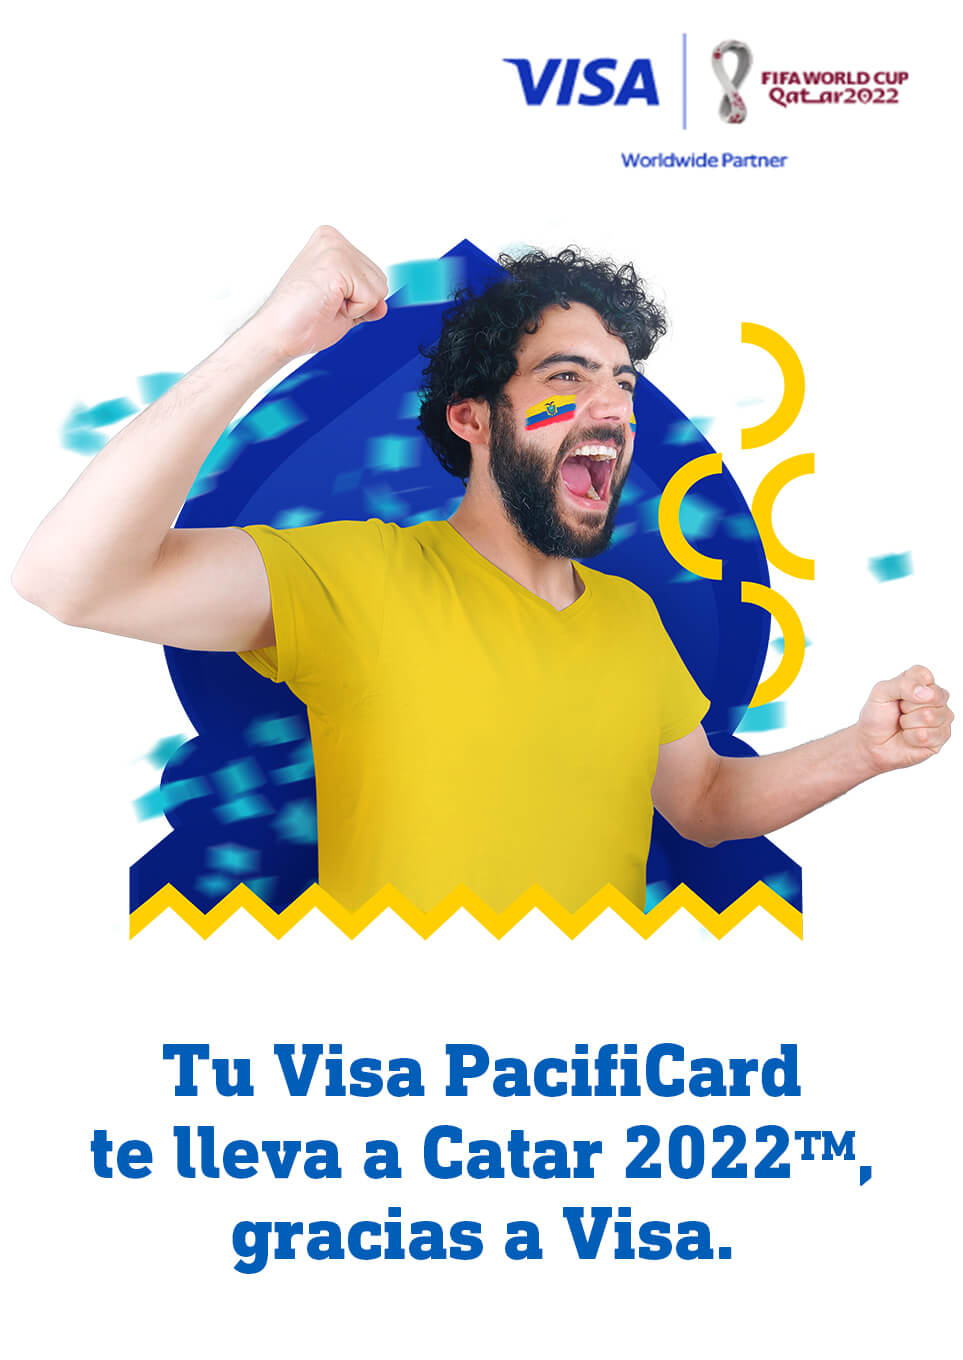 Compra con Visa PacifiCard y gana un viaje a Catar 2022TM gracias a Visa